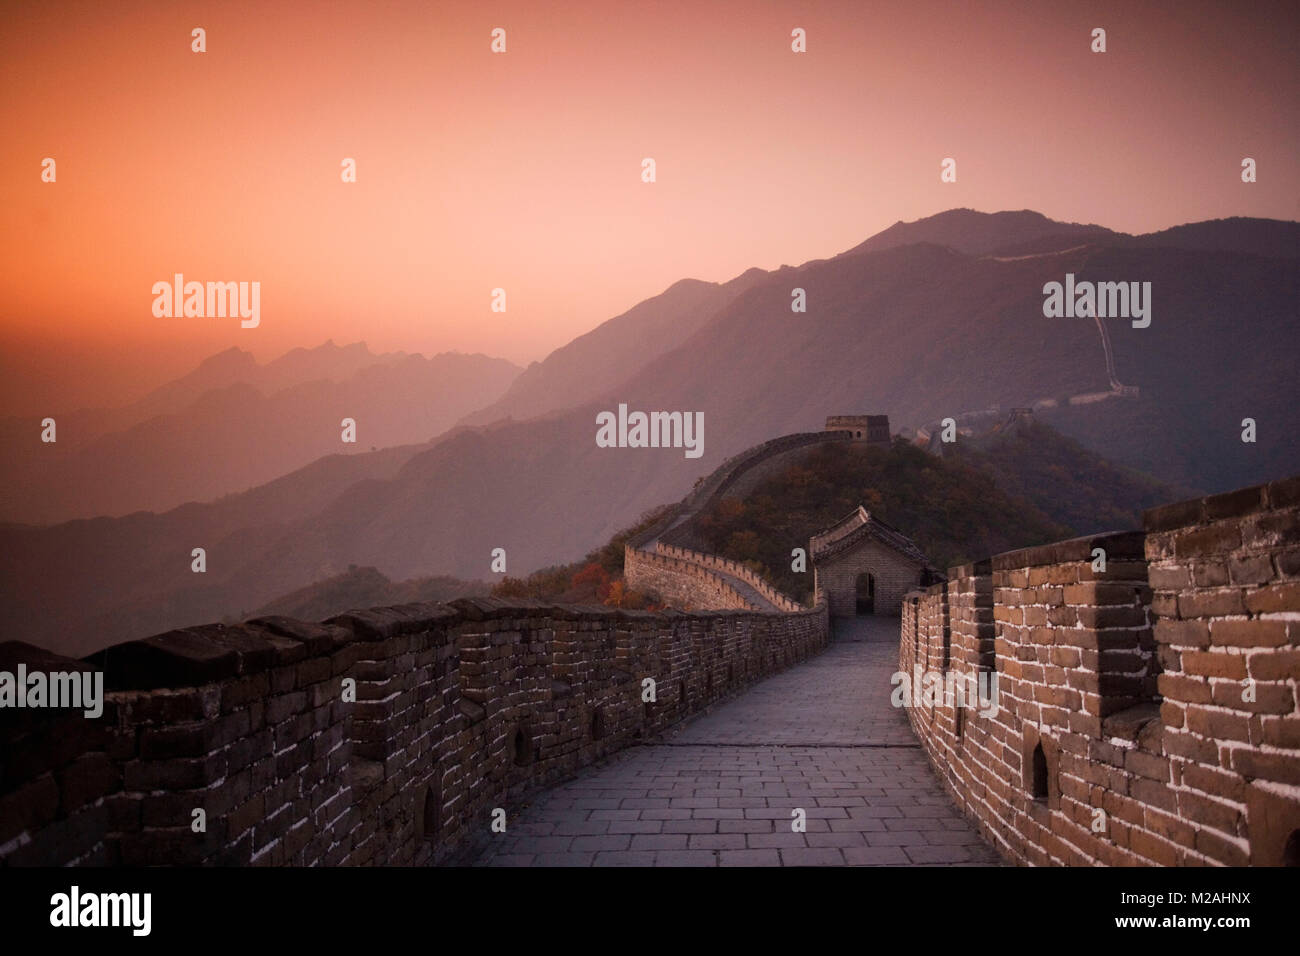 China. Mutianyu, in der Nähe von Beijing. Die Große Mauer. UNESCO-Weltkulturerbe. Herbst. Sonnenuntergang. Stockfoto